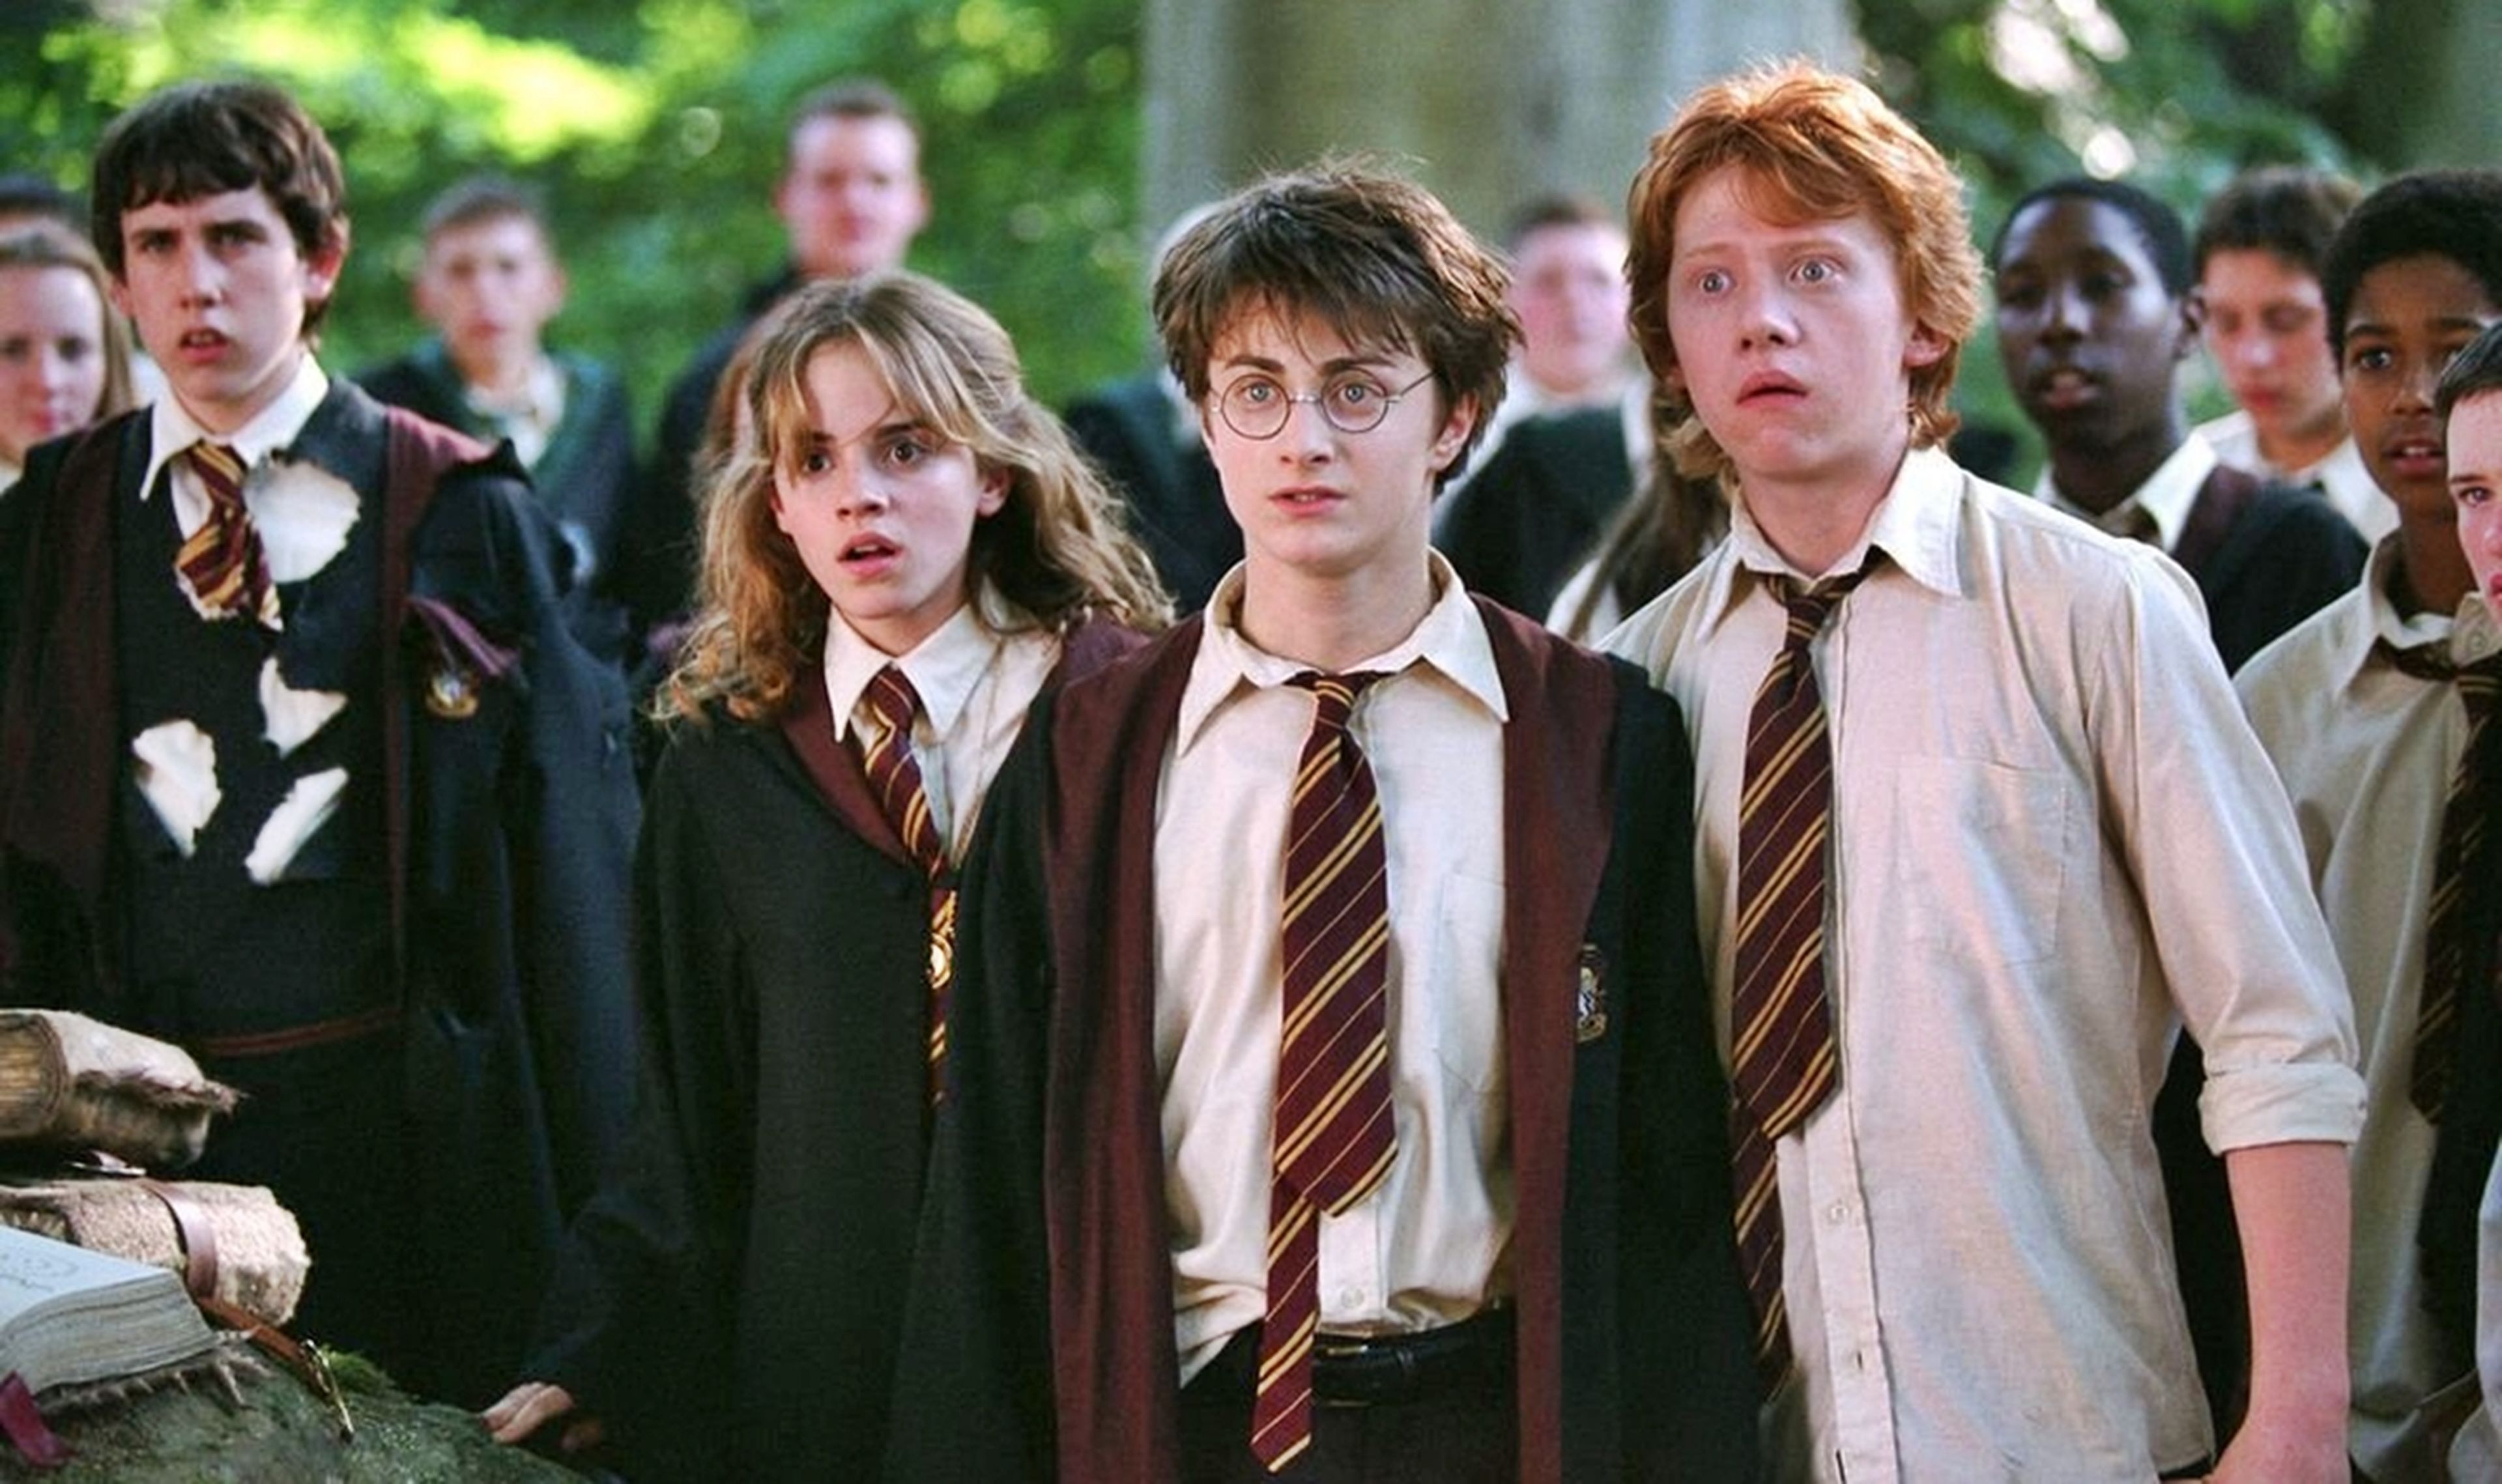 Curiosidades de los uniformes de Hogwarts en Harry Potter que seguramente desconoces